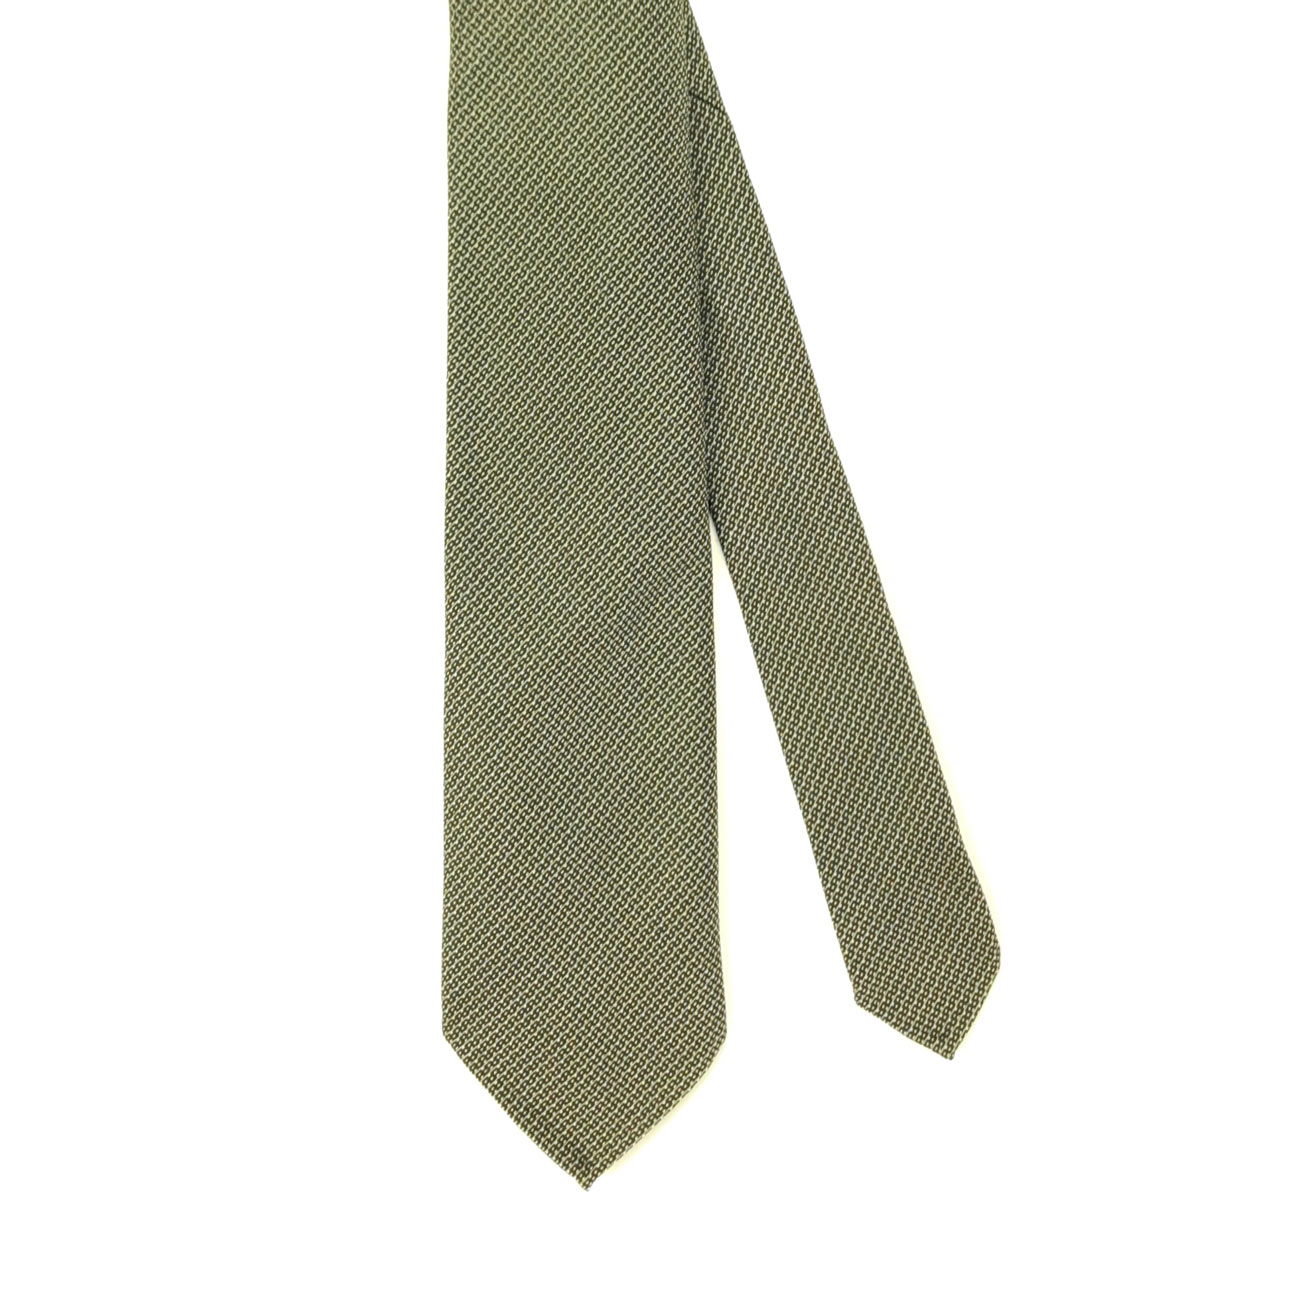 3-Fold Interlocking Chains Printed Silk Tie - Beige/Light Green/Gold